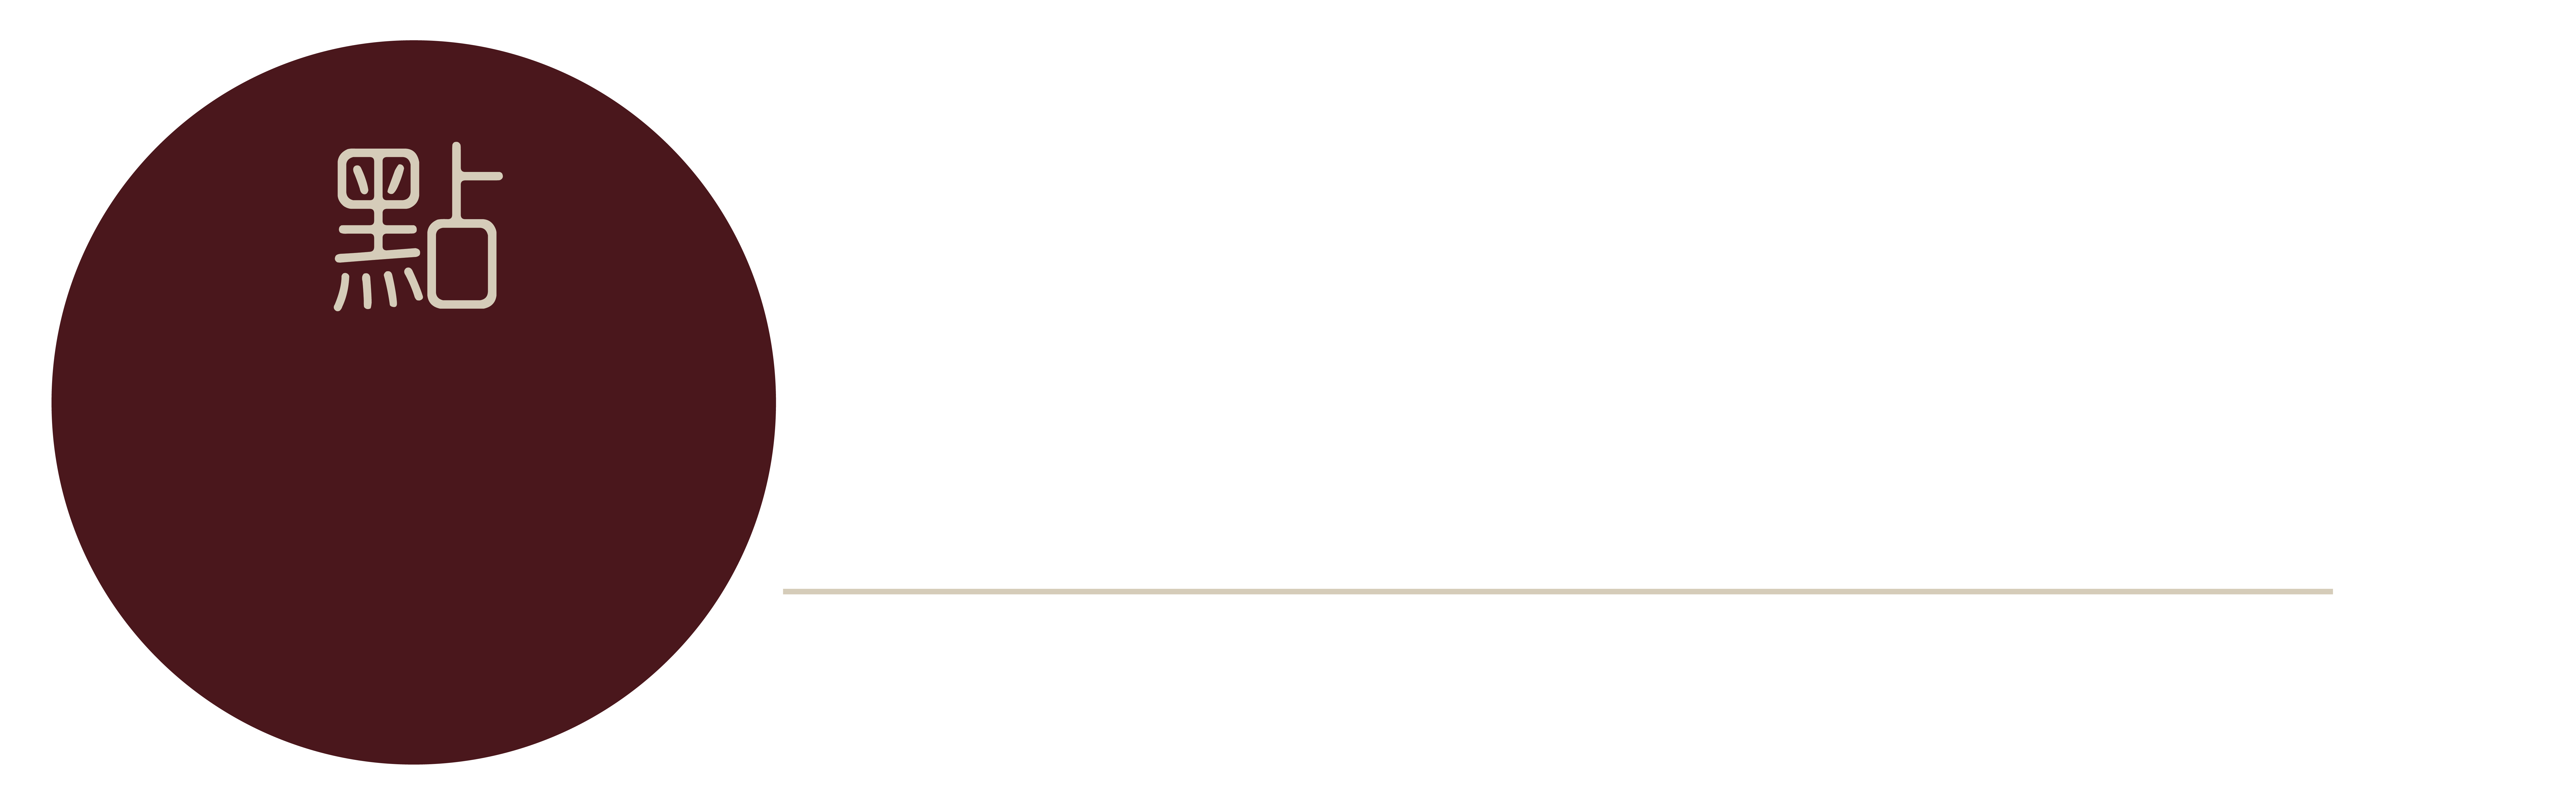 Dot-to-Dot Lounge